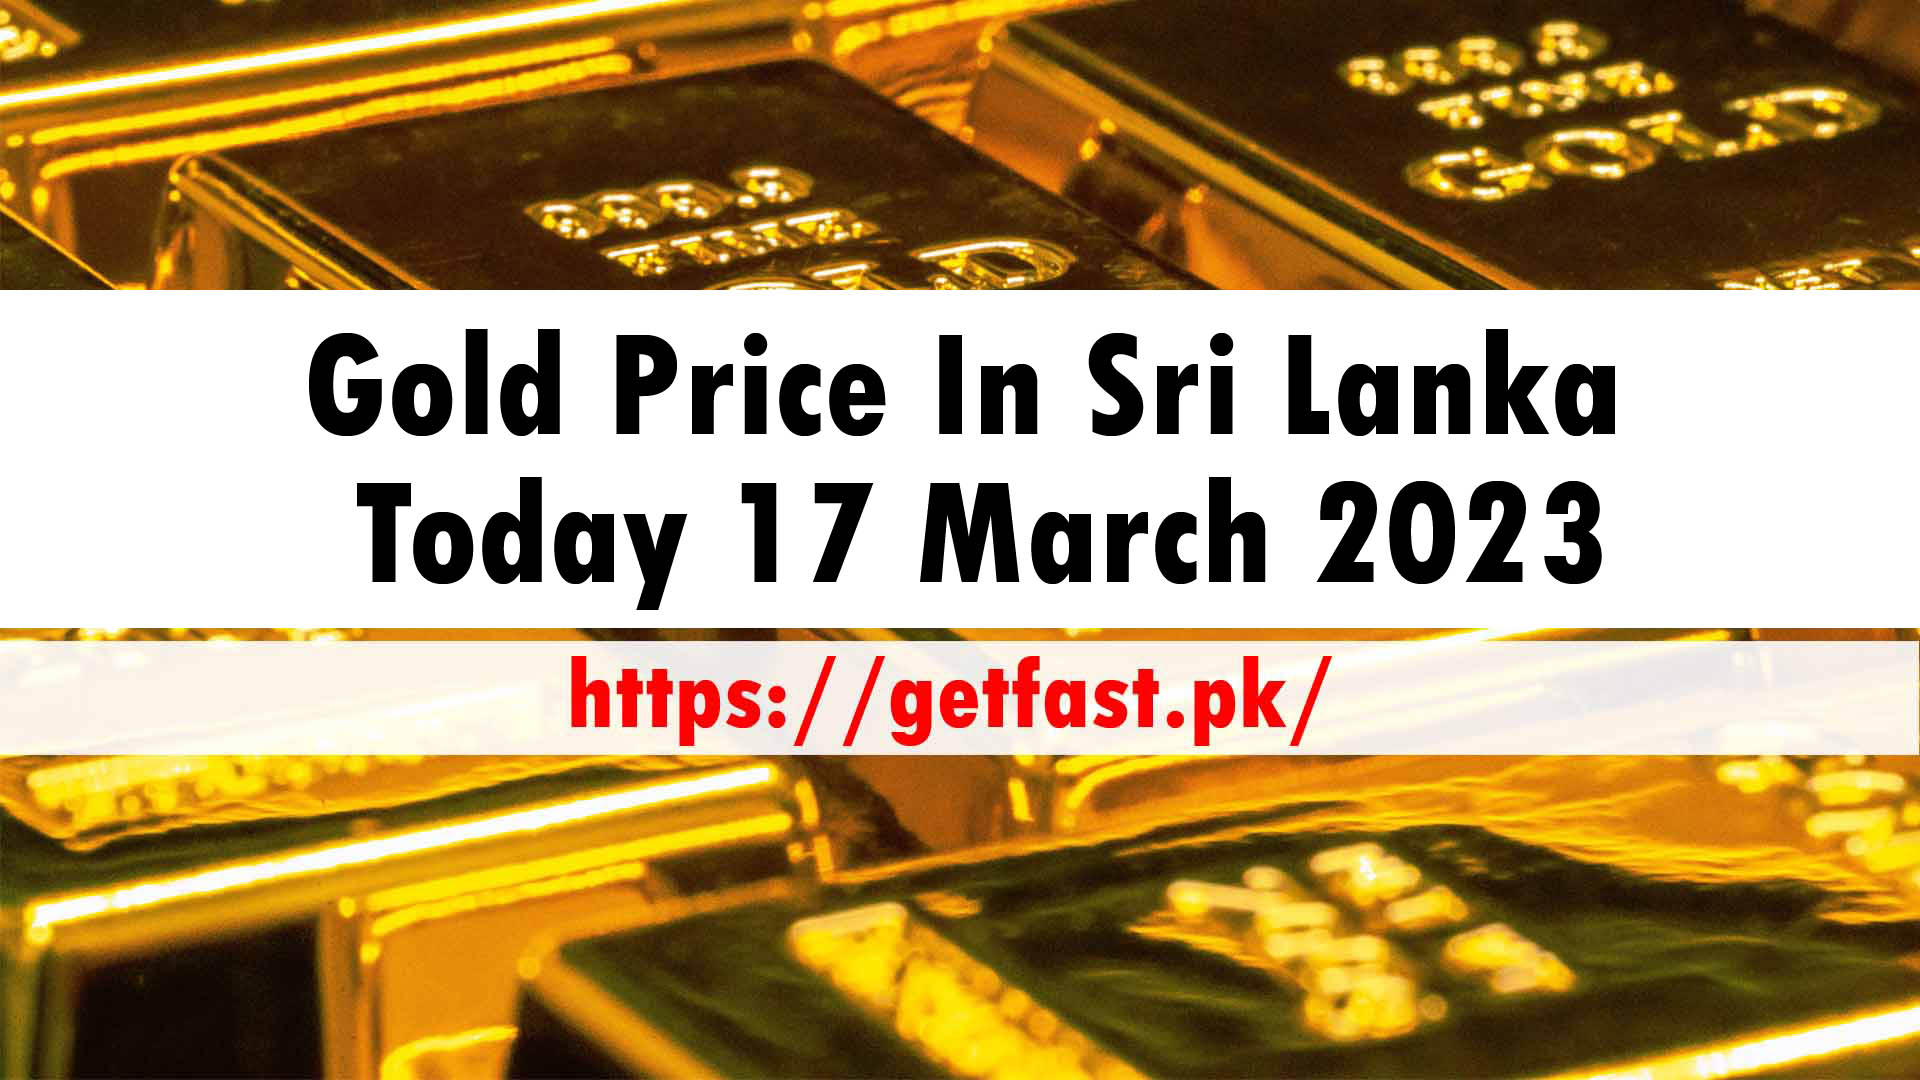 Gold Price In Sri Lanka Today 17 March 2023